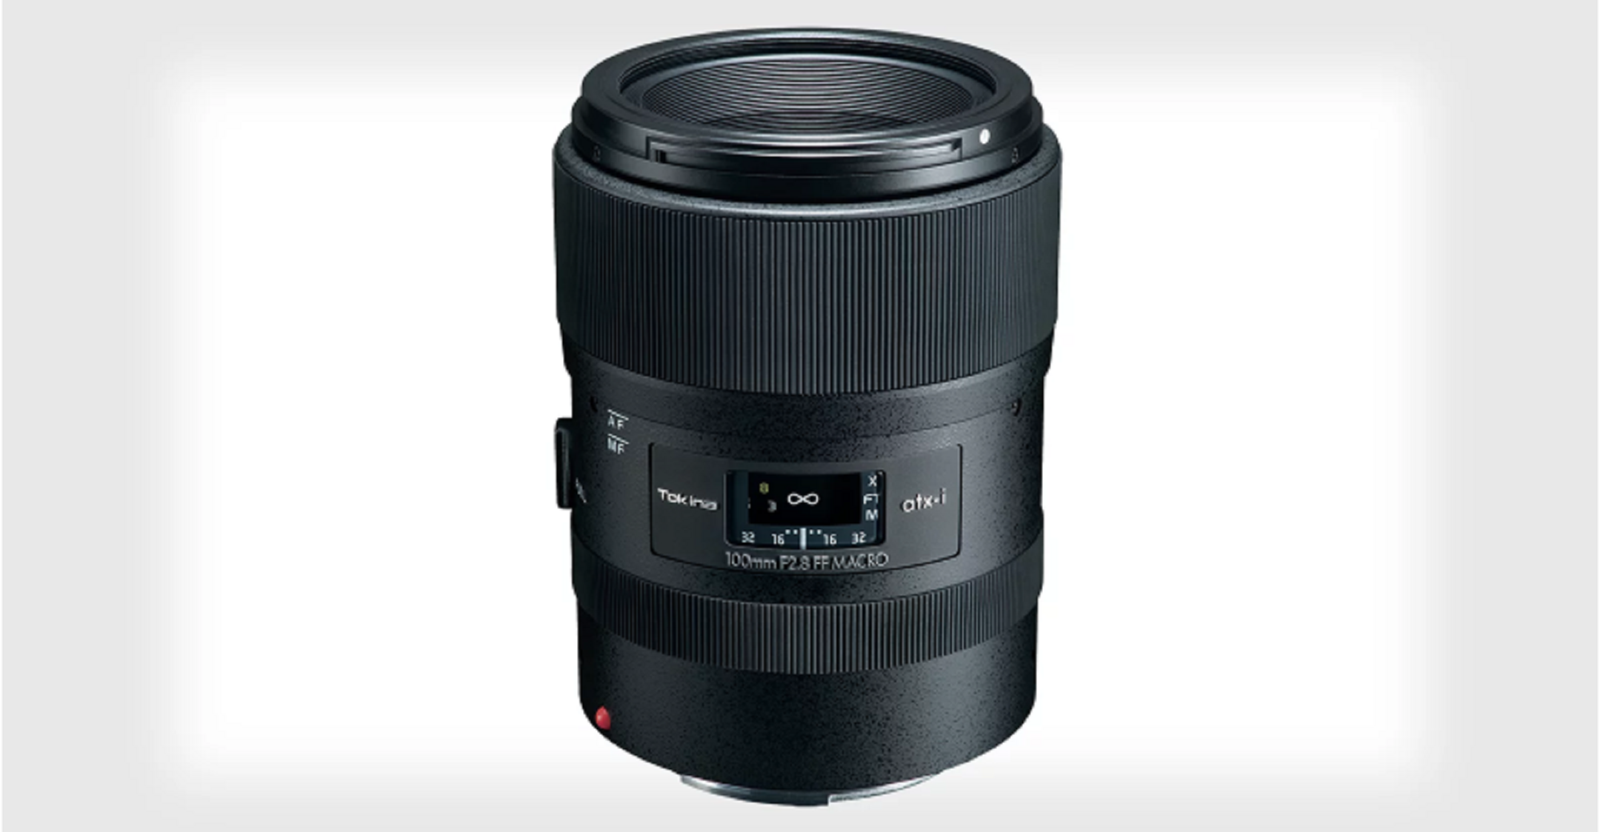 Tokina tiết lộ ống kính atx-i 100mm f/2.8 Macro FF cho Canon và Nikon